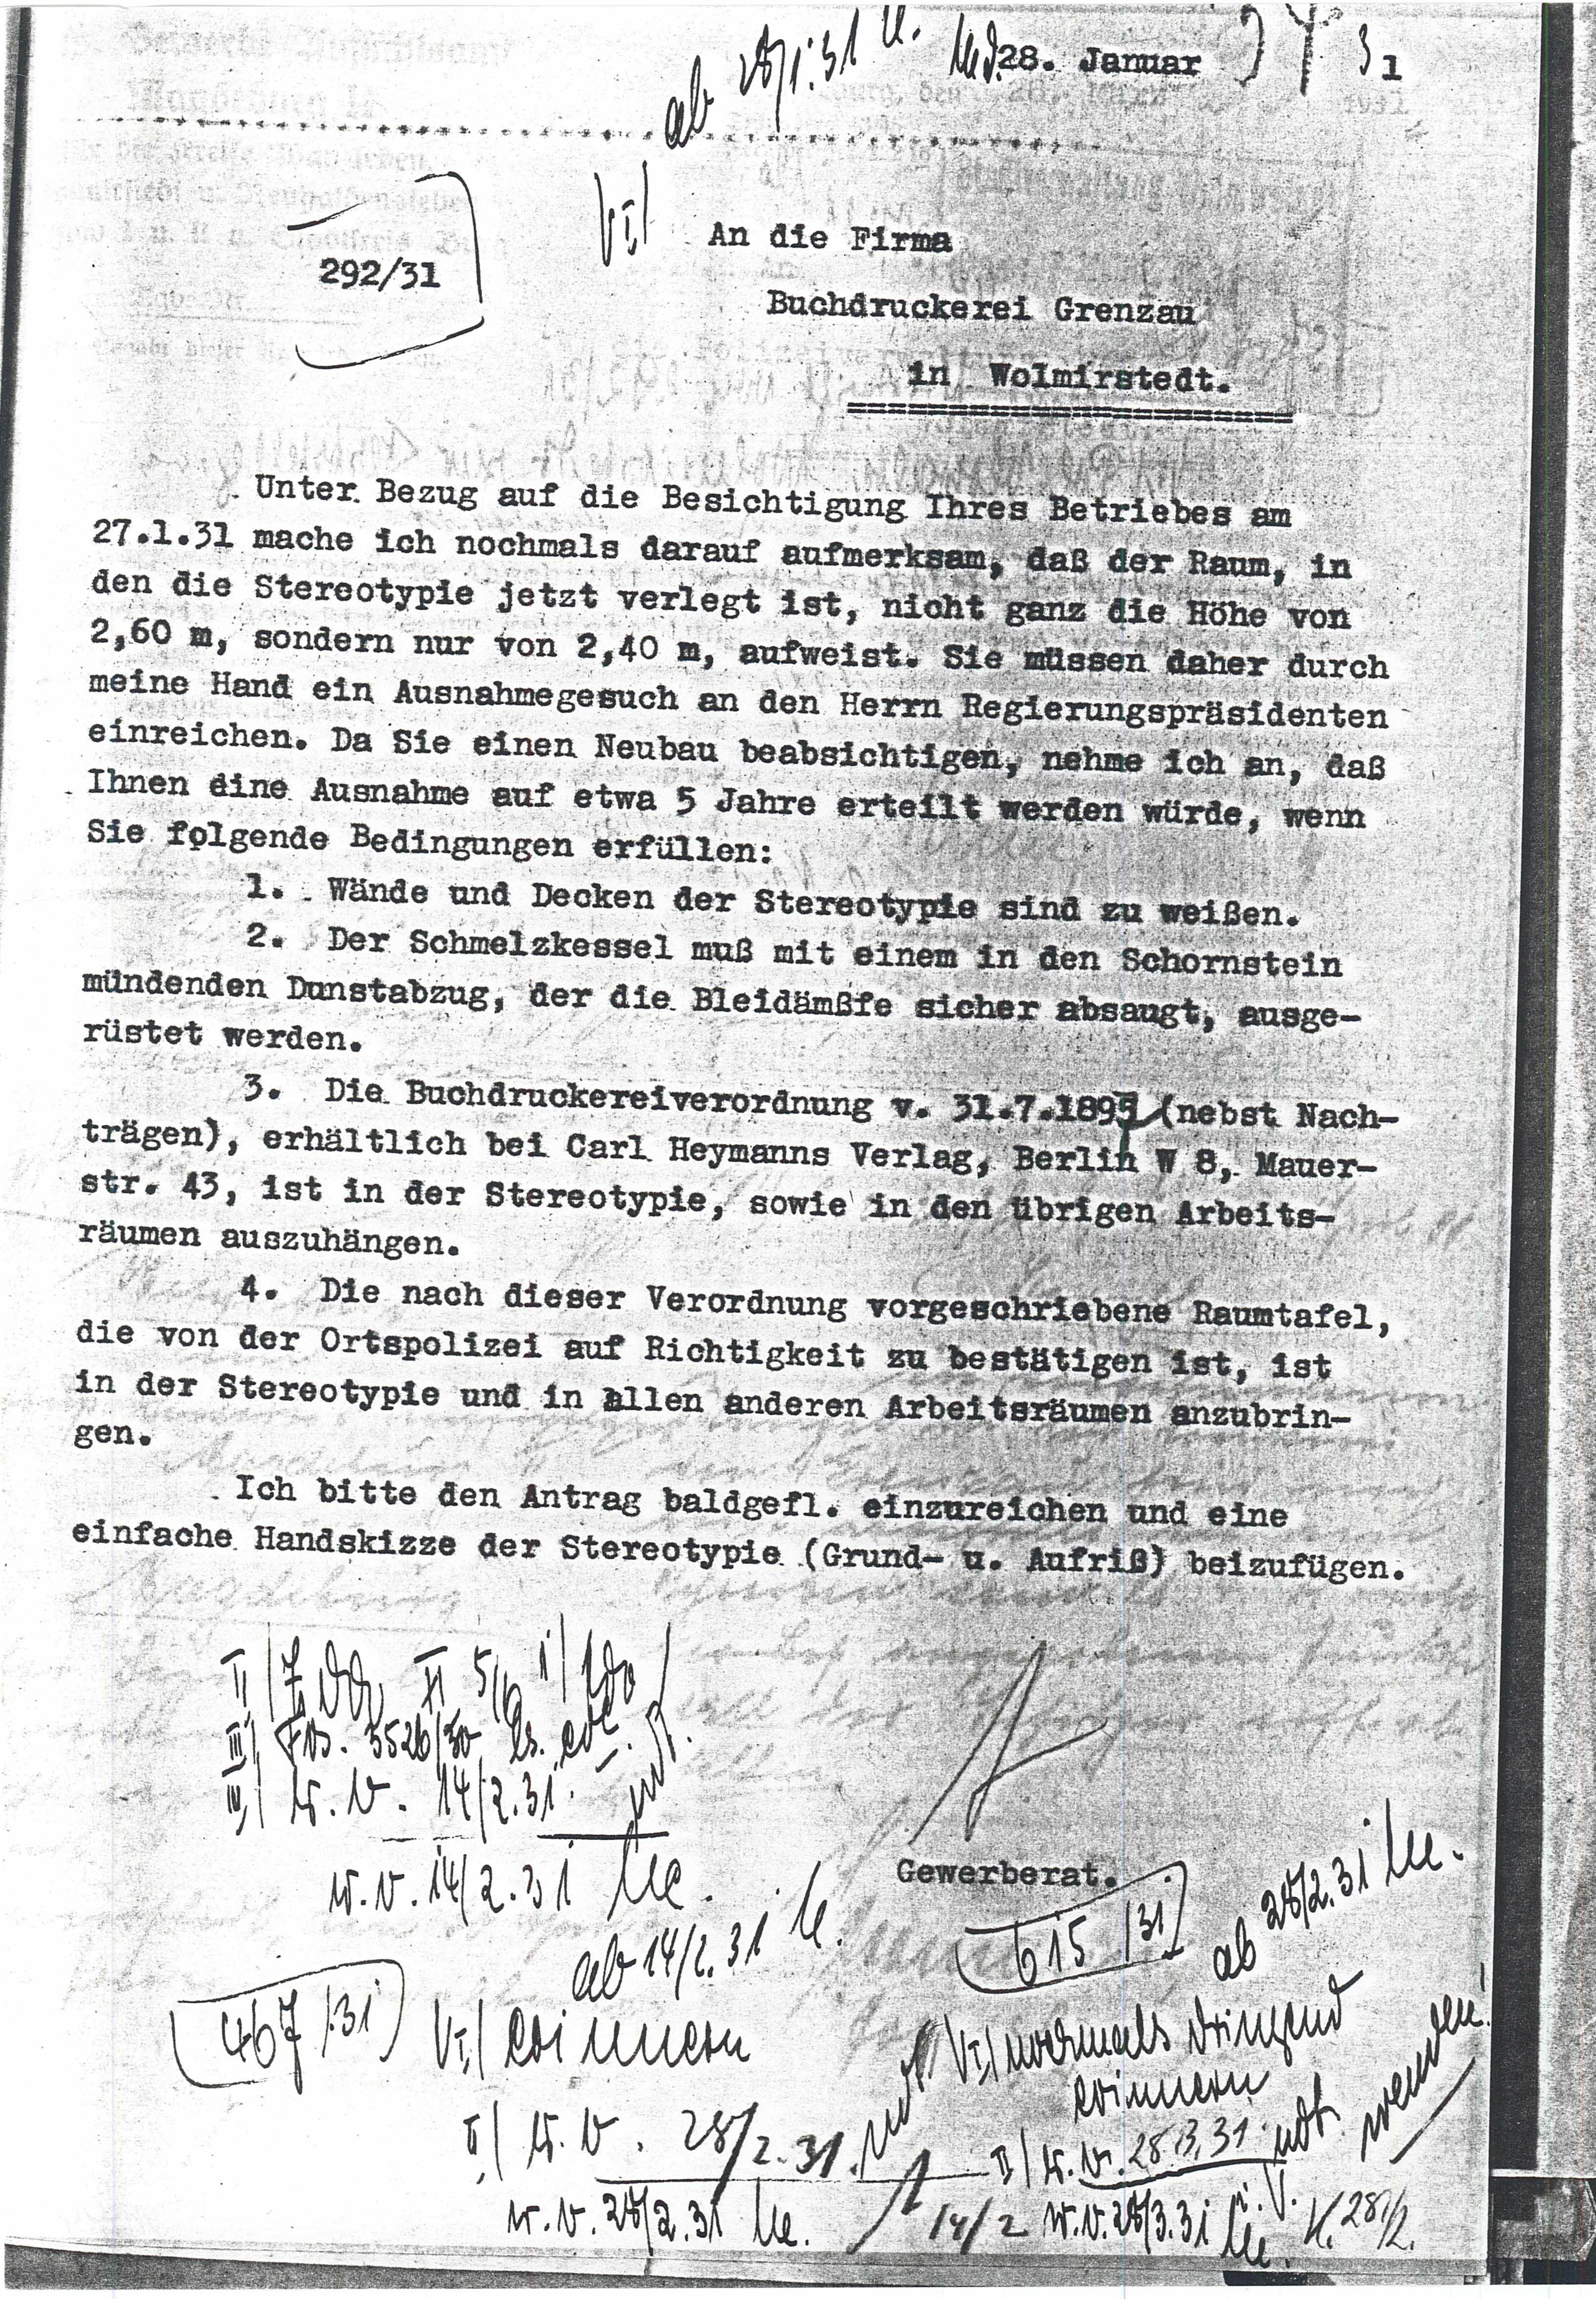 Schreiben Druckerei Grenzau - Umsetzung v. Maschinen - 28.01.1931 (Museum Wolmirstedt RR-F)